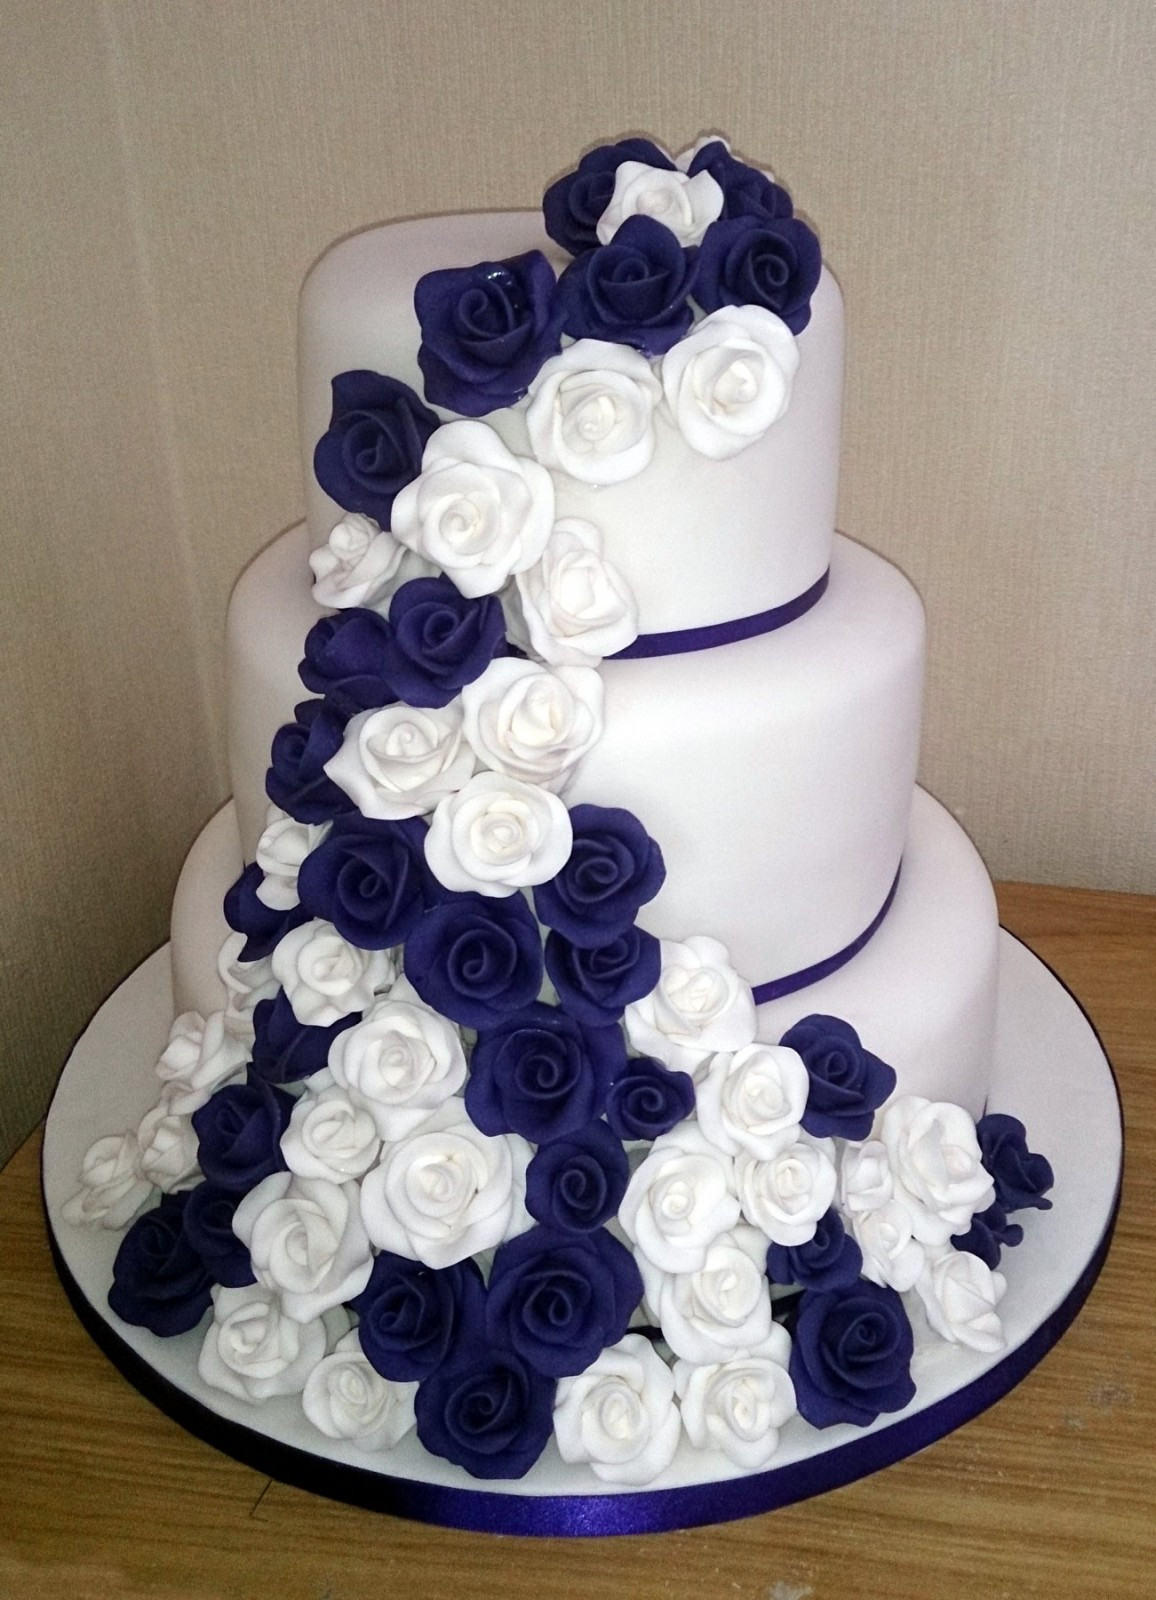 3 Tier Wedding Cakes Prices
 3 Tier White and Purple Rose Wedding Cake Susie s Cakes